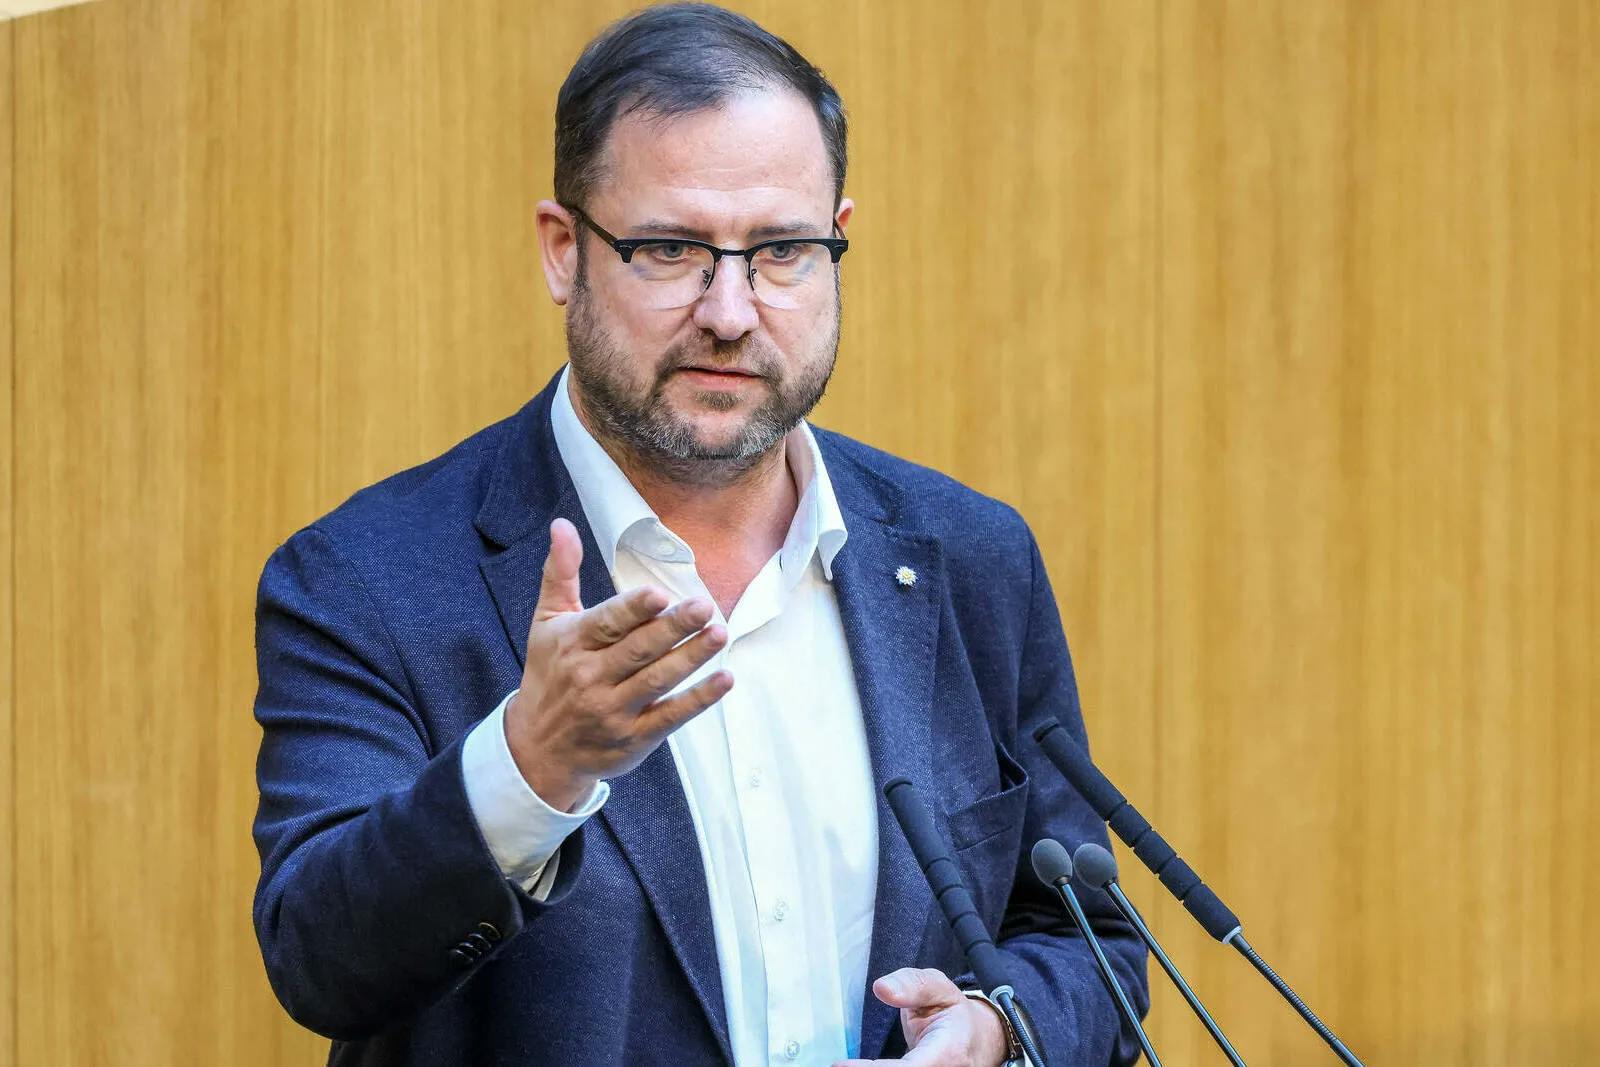 Bargeld-Debatte: FPÖ will bei ÖVP-Vorstoß zuerst „Kleingedrucktes“ lesen